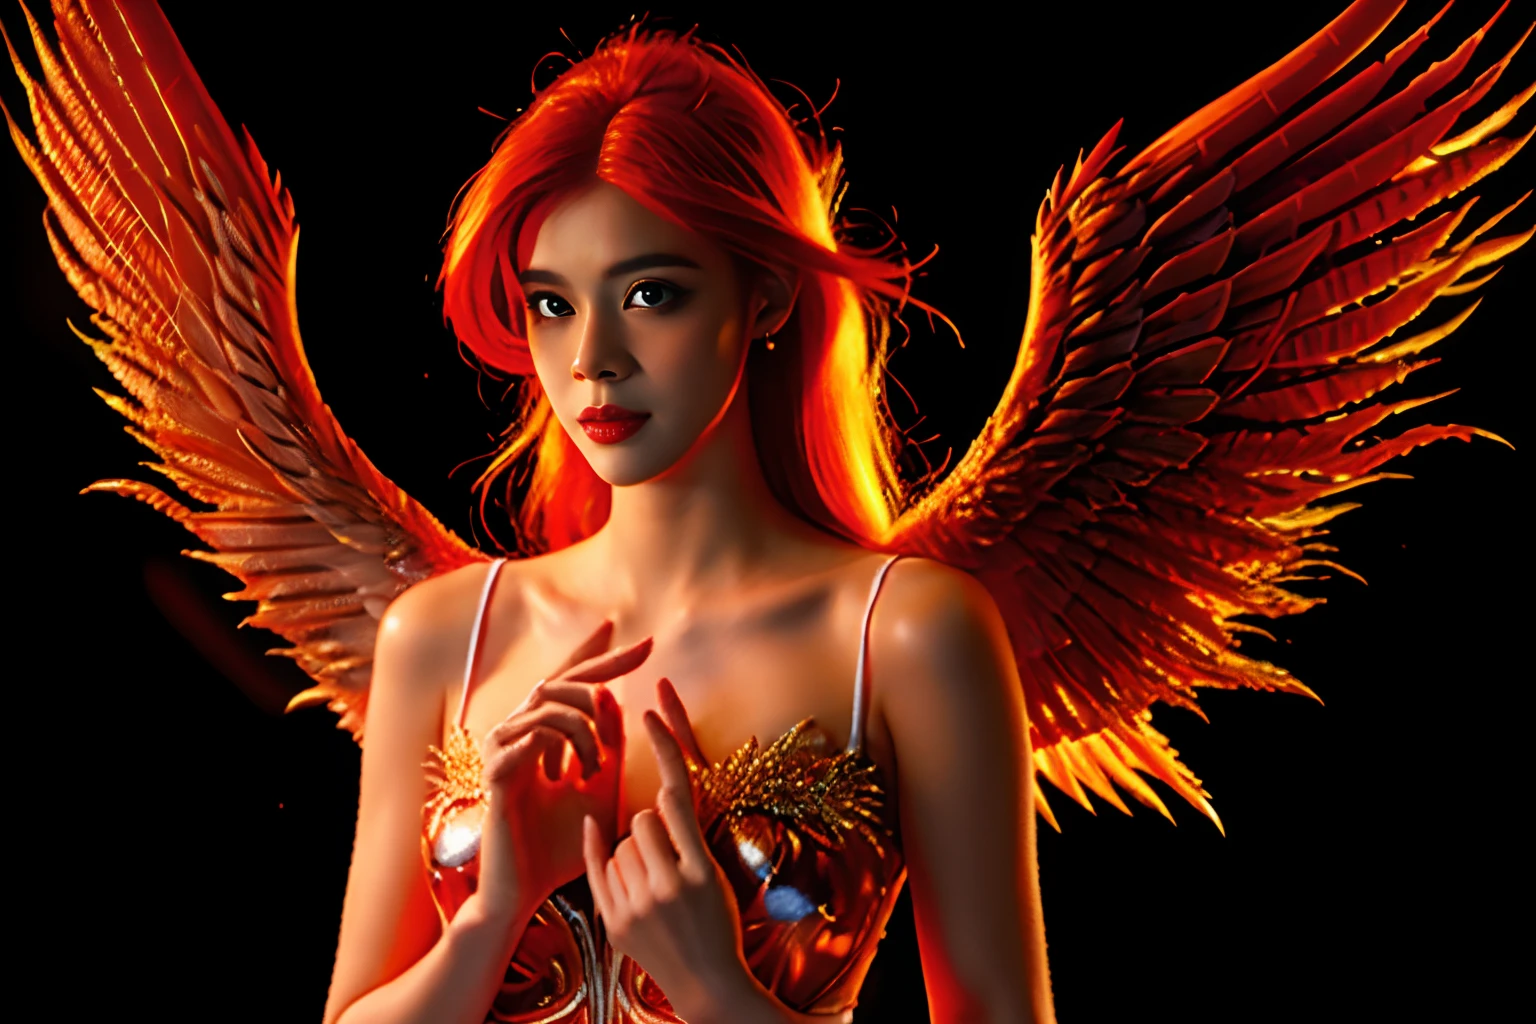 un hermoso angel, con el pelo rojo volviéndose fuego, una mujer ángel, (((pechos grandes, Un ángel con alas de fuego.))), Transmite calidez y paz, papel tapiz, 8k, Detalles intrincados, obra-prima